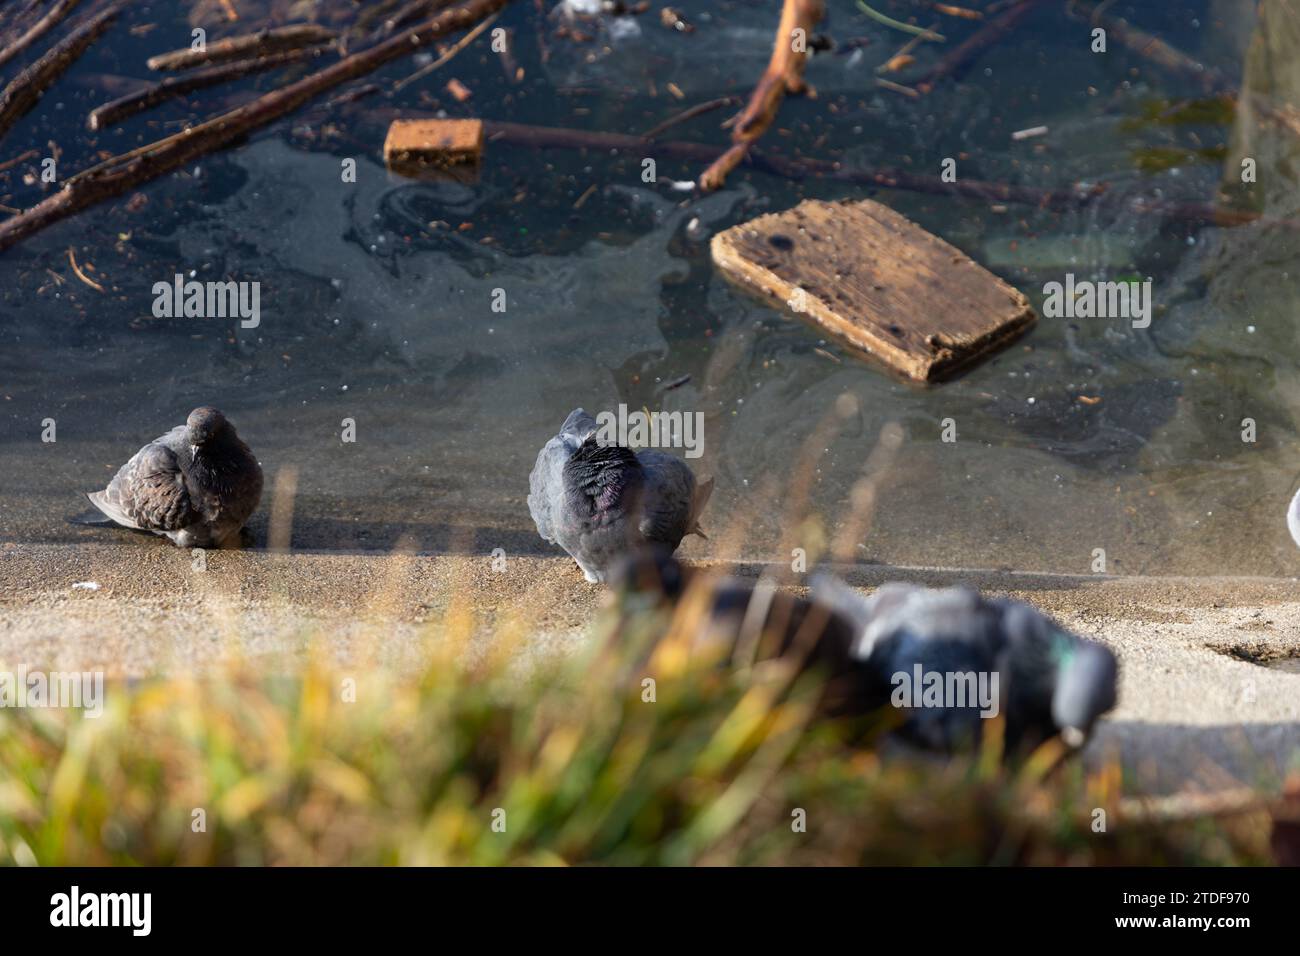 Tauben am Ufer des schmutzigen Sees im Frühling. Das Bild zeigt die Verschmutzung der Umwelt und die Auswirkungen, die dies auf die Tiere in ihren hat Stockfoto